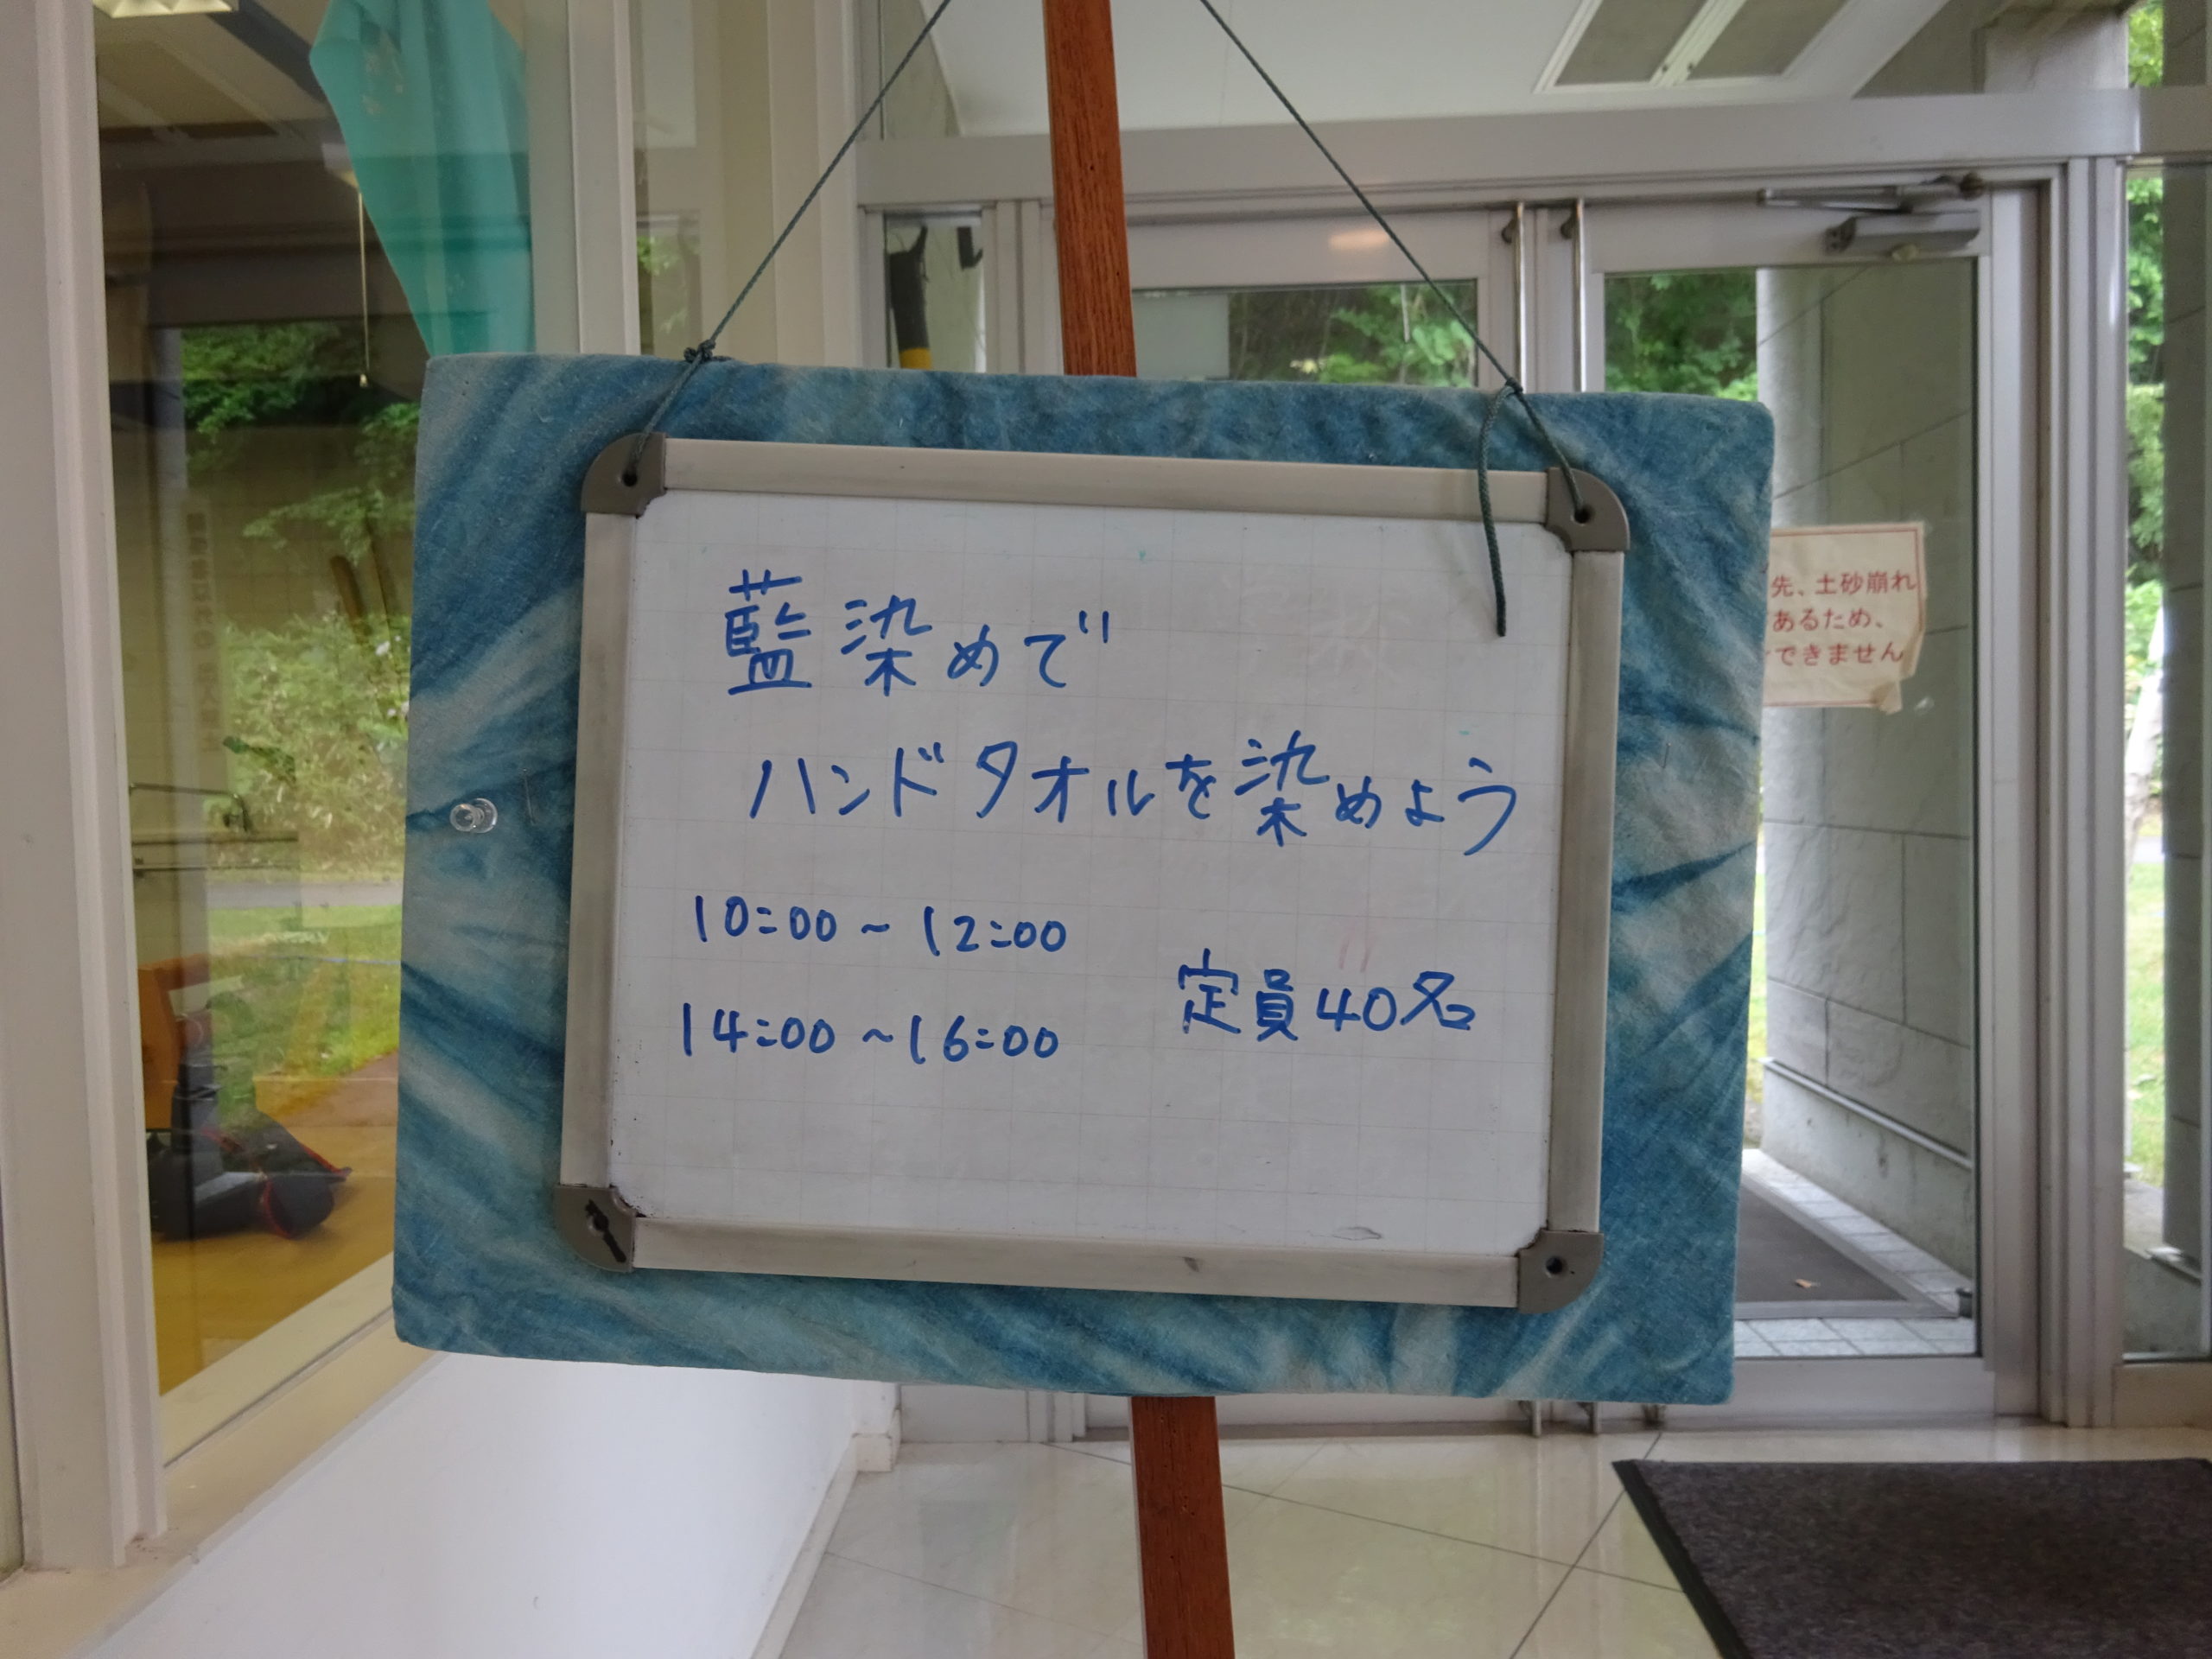 札幌芸術の森クラフト工房で「藍染めでハンドタオルを染めよう」